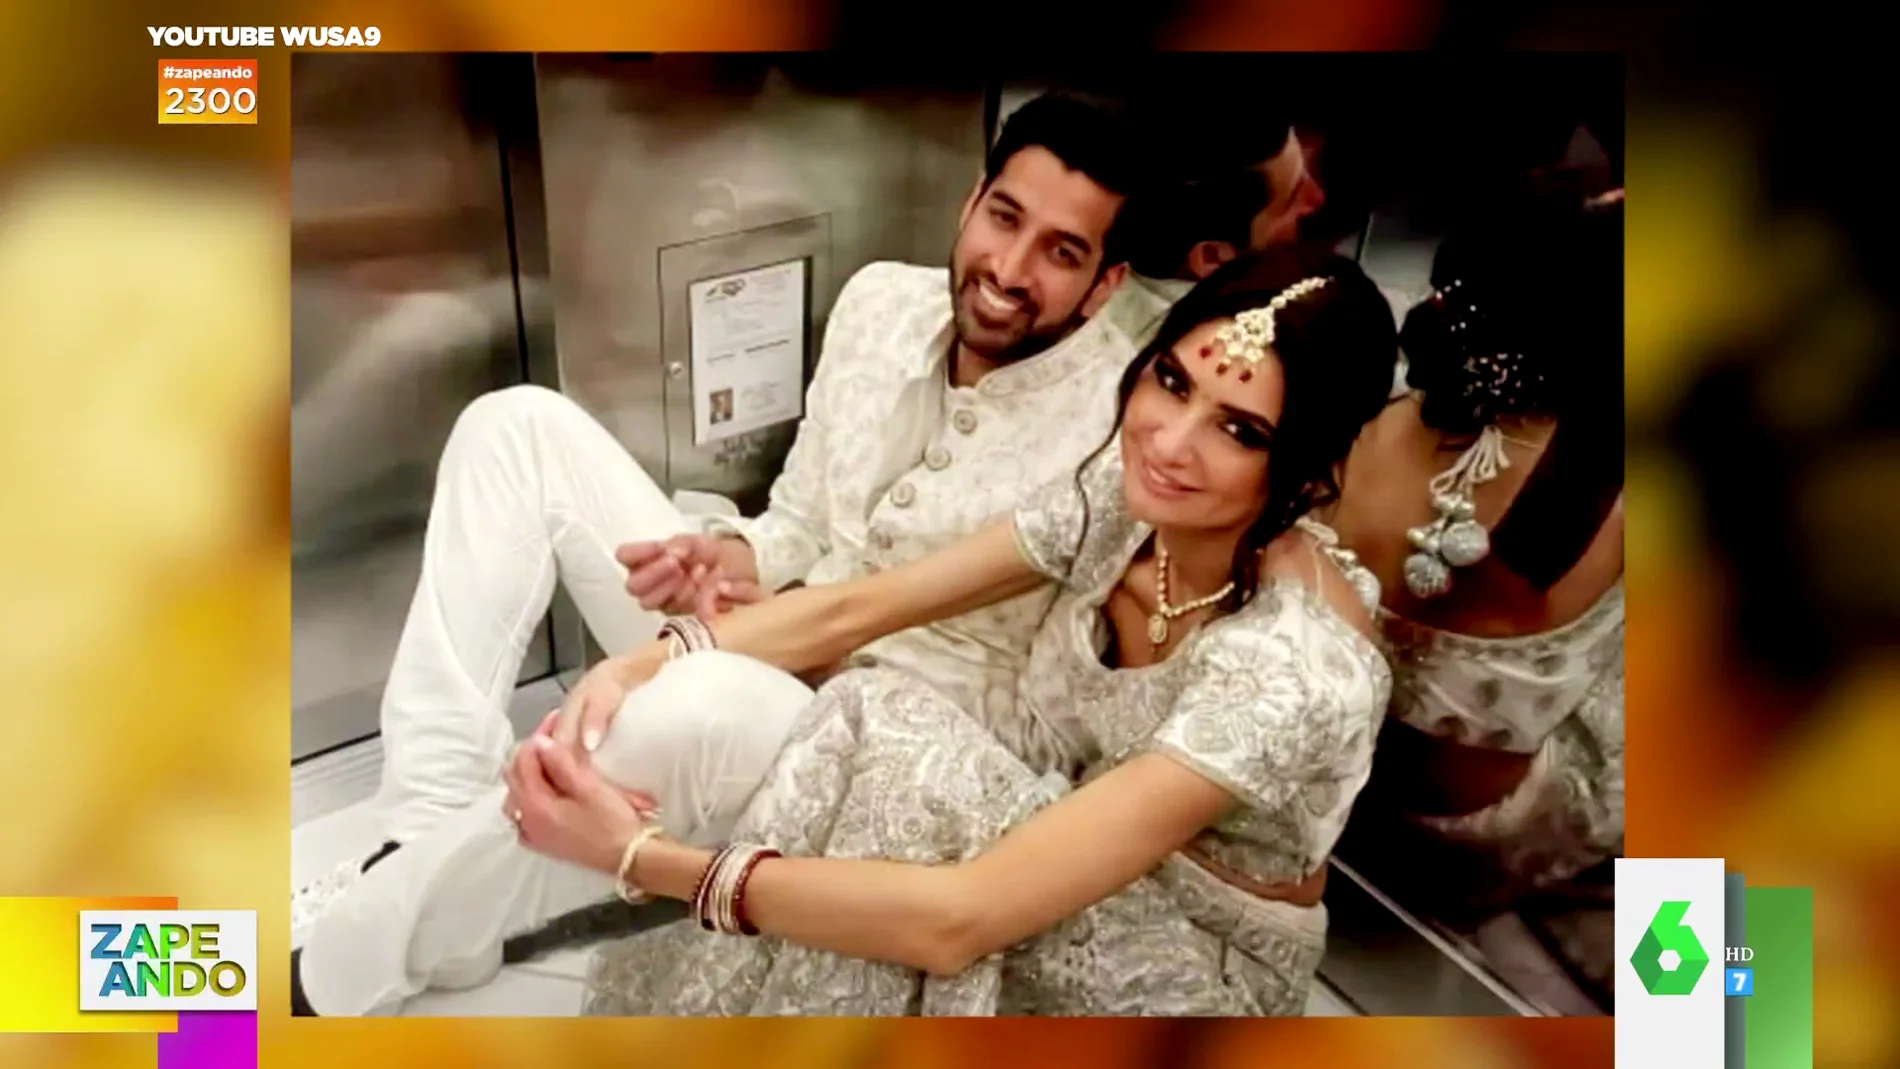 La historia viral de dos novios el día de su boda: se quedan atrapados horas en un ascensor 